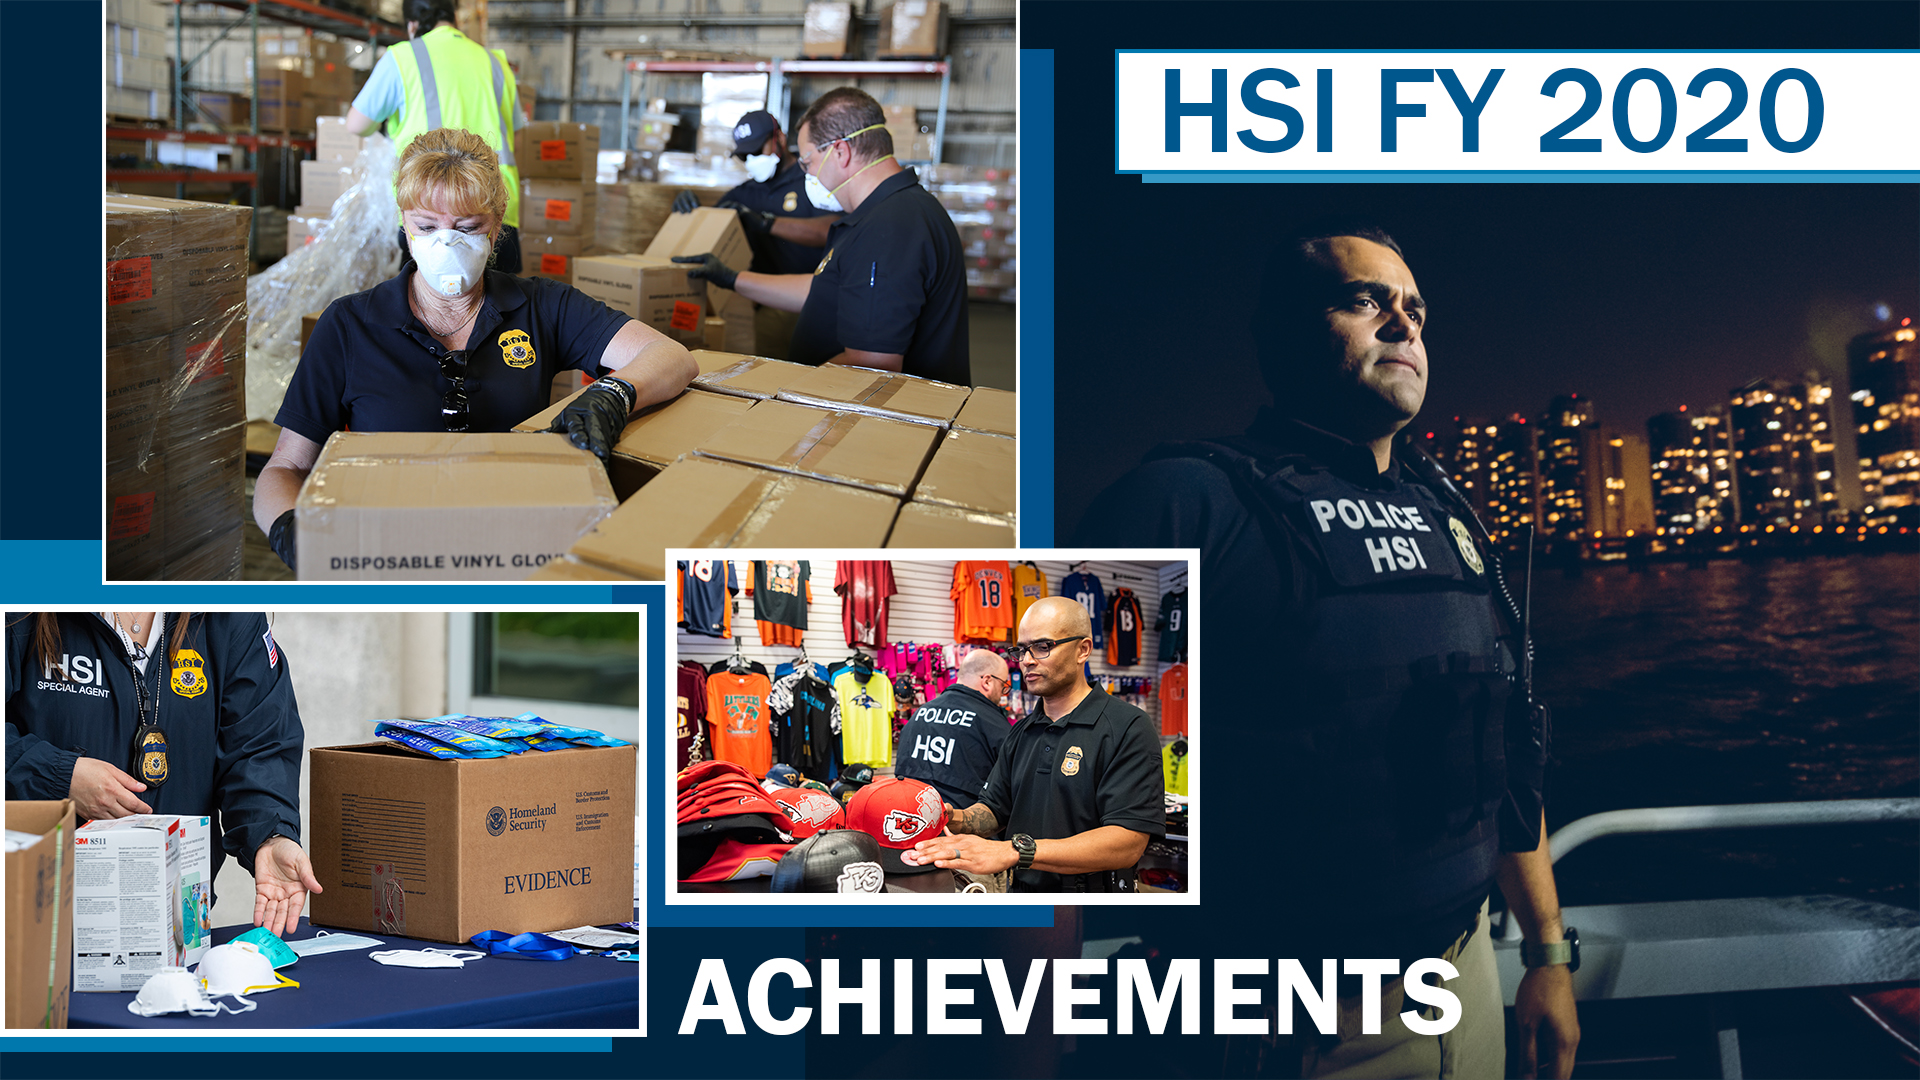 HSI FY 2020 Achievements